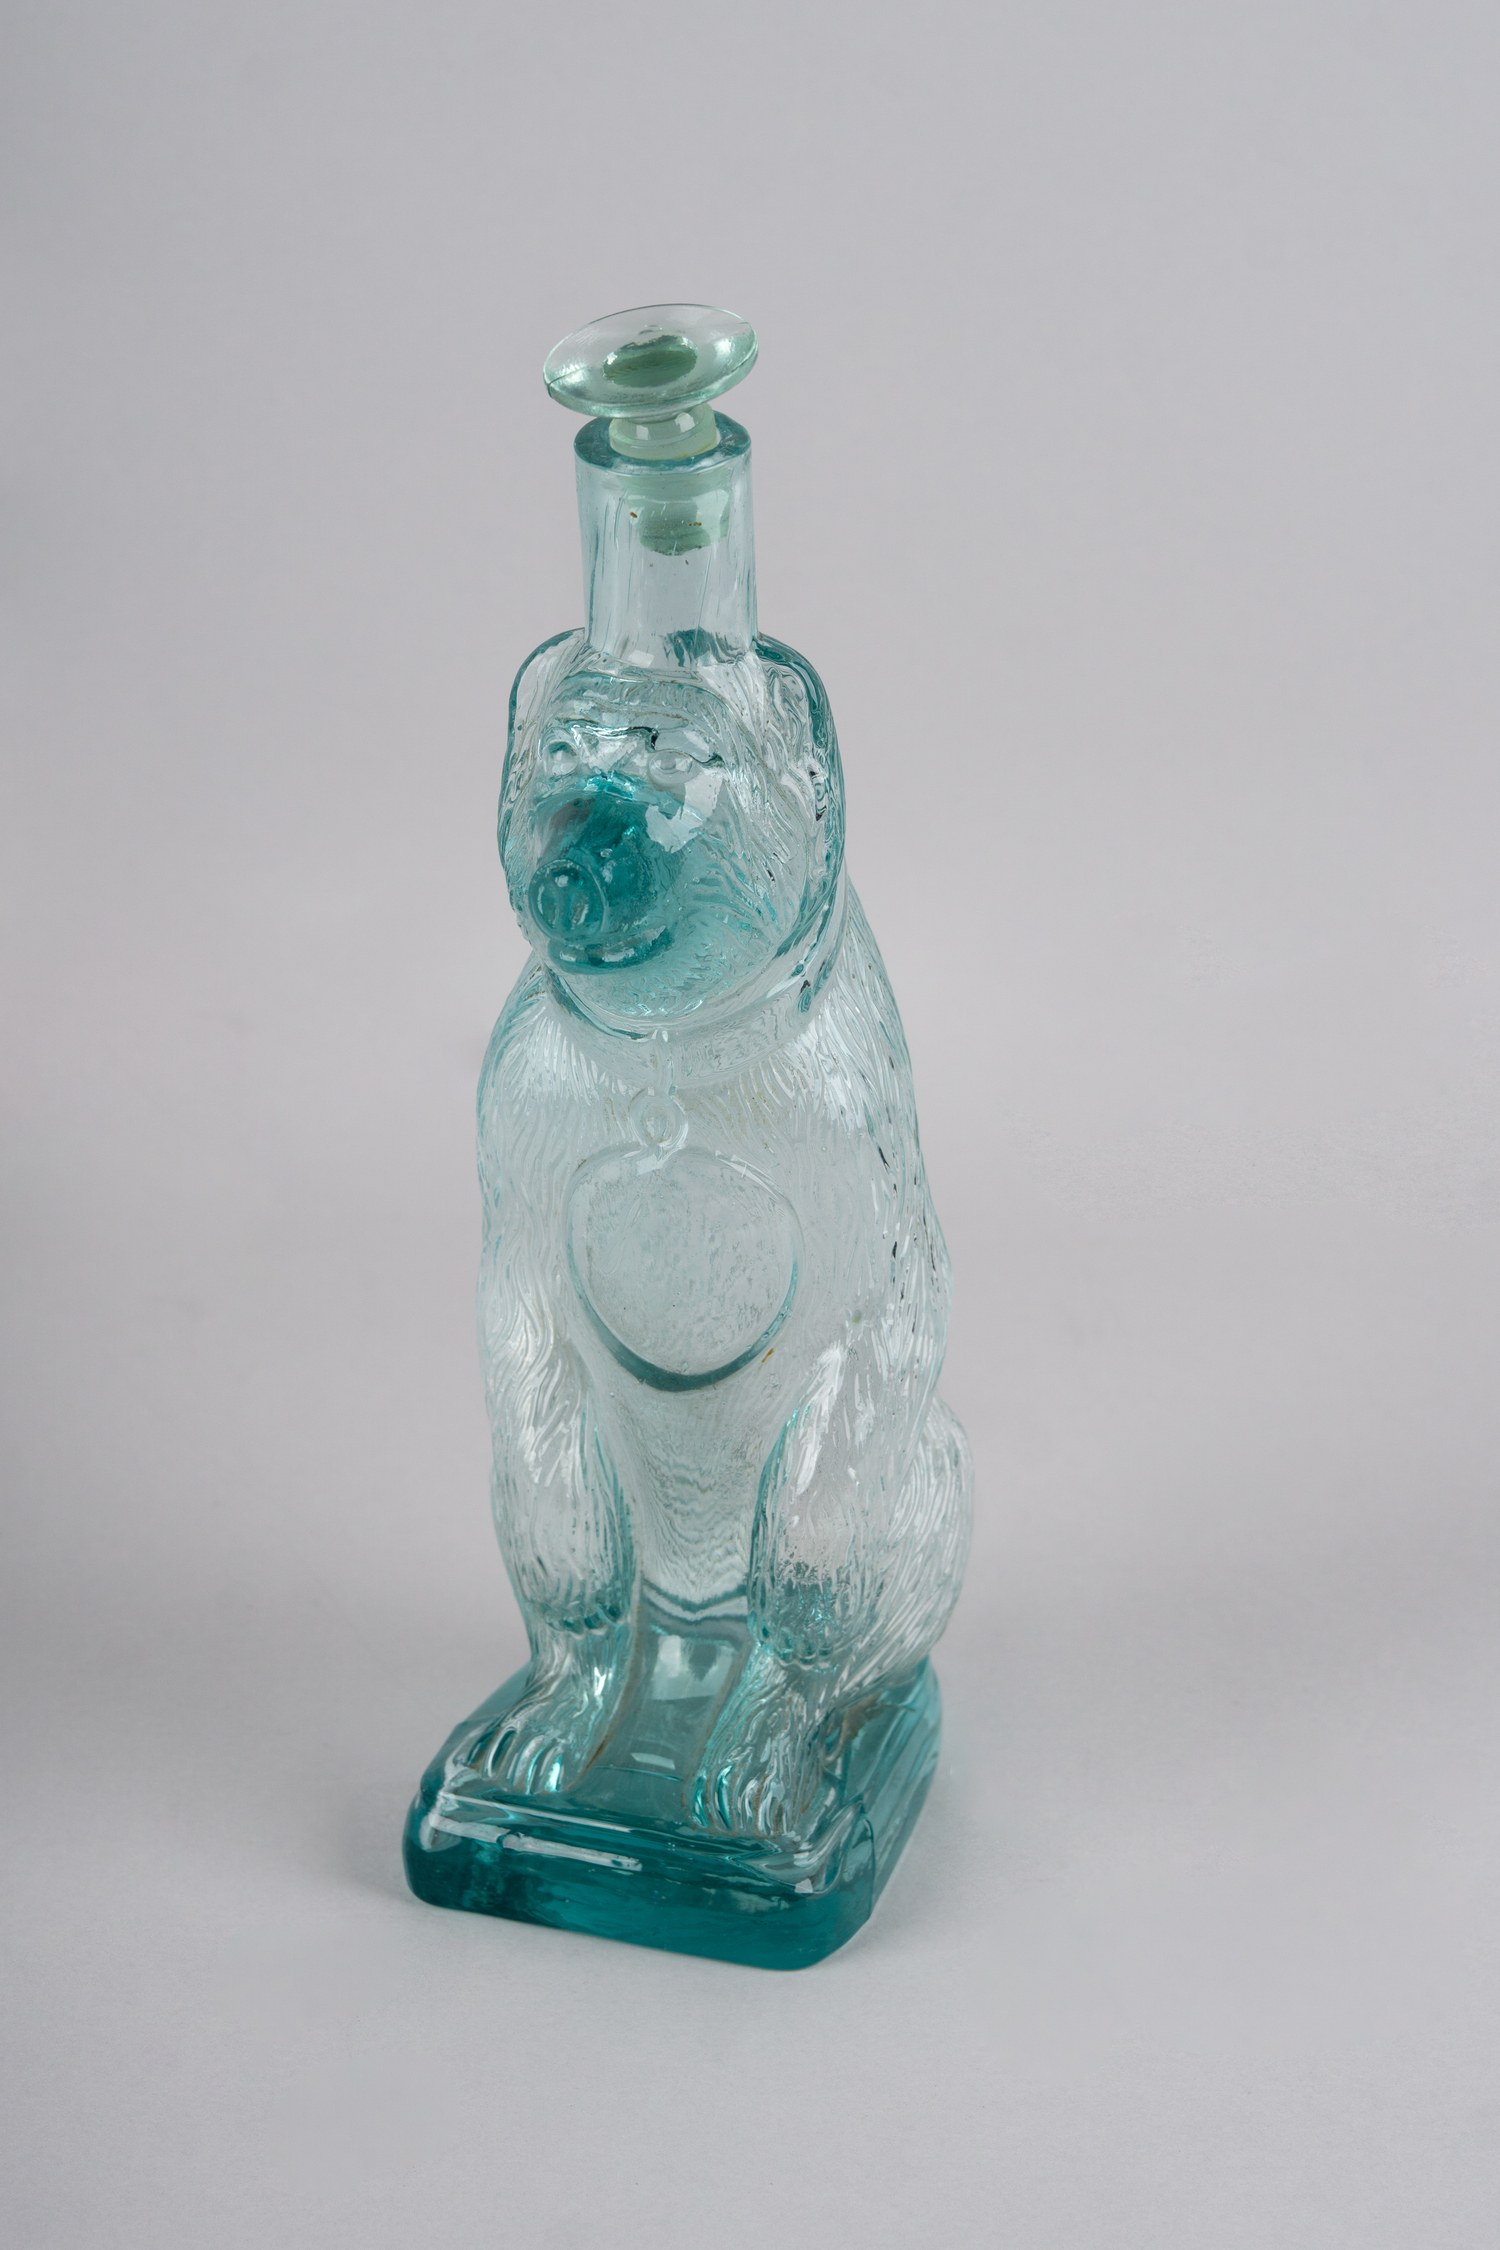 Водочная бутылка «Медведь» из прессованного стекла.<br>Россия, конец XIX – первая четверть ХХ века.